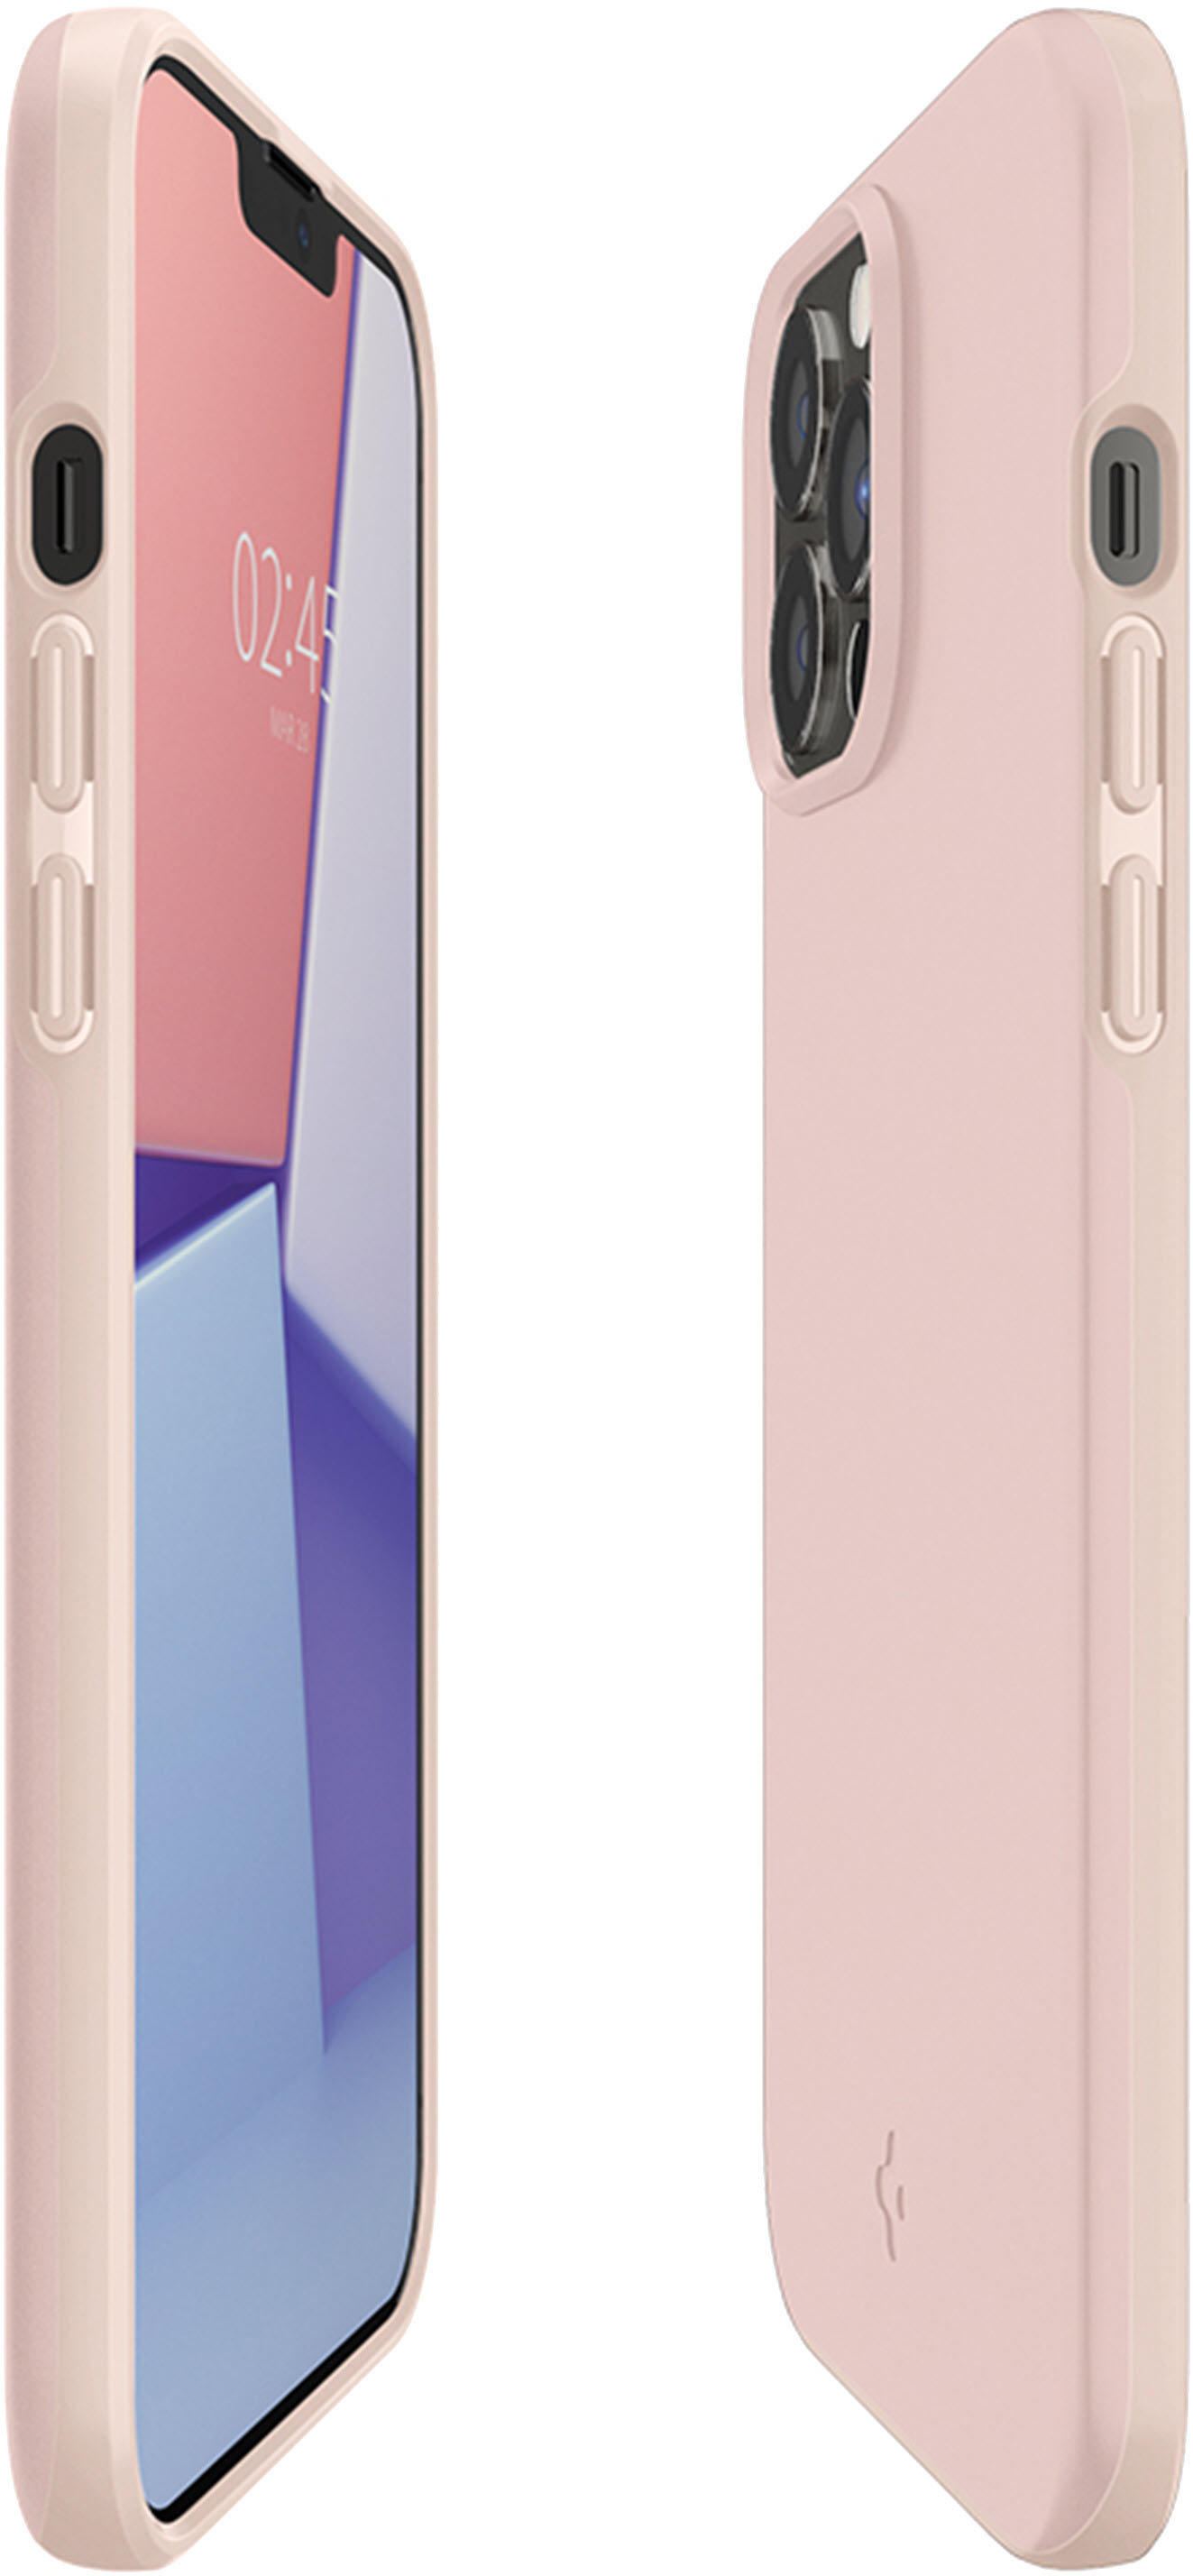 iPhone 13 Pro Max Case Thin Fit -  Official Site – Spigen Inc